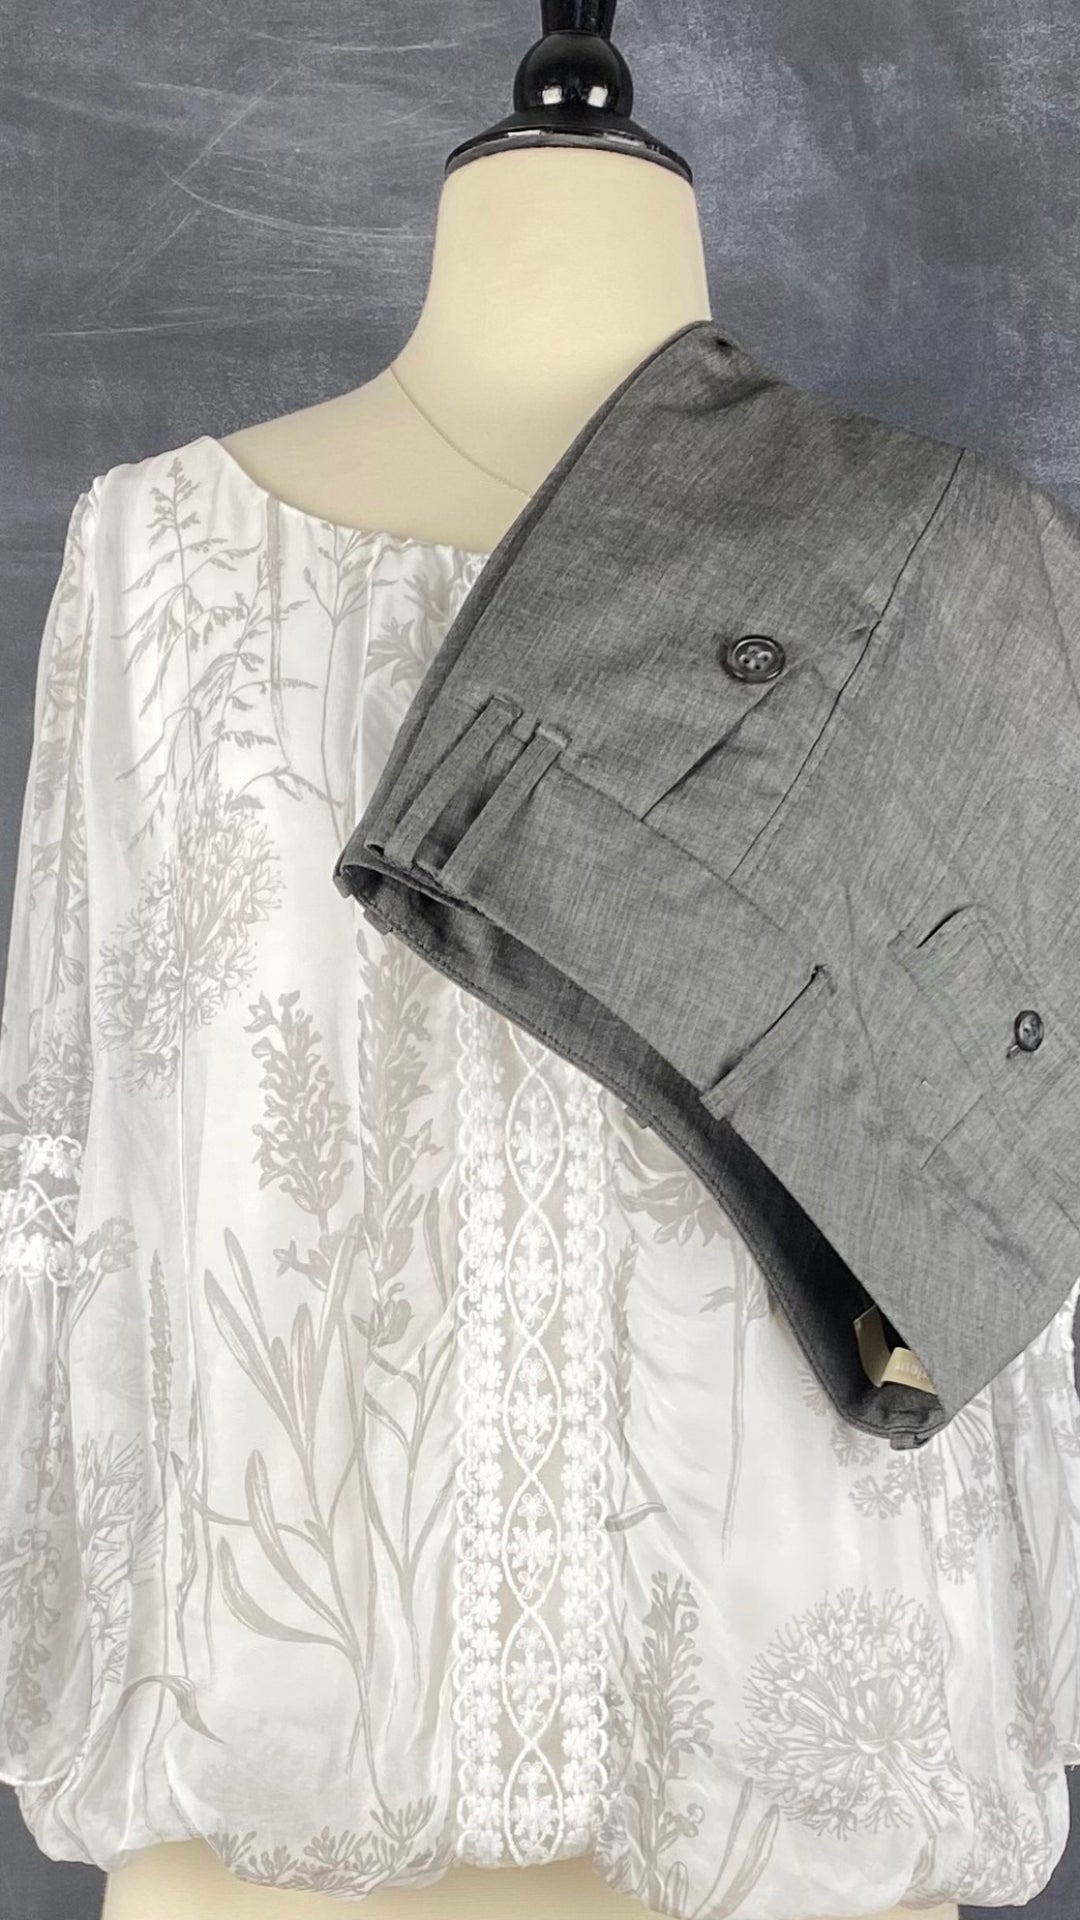 Pantalon gris droit fluide Gardeur, taille estimée à 6. Vue de l'agencement avec la blouse en mélange de soie crème et grise.